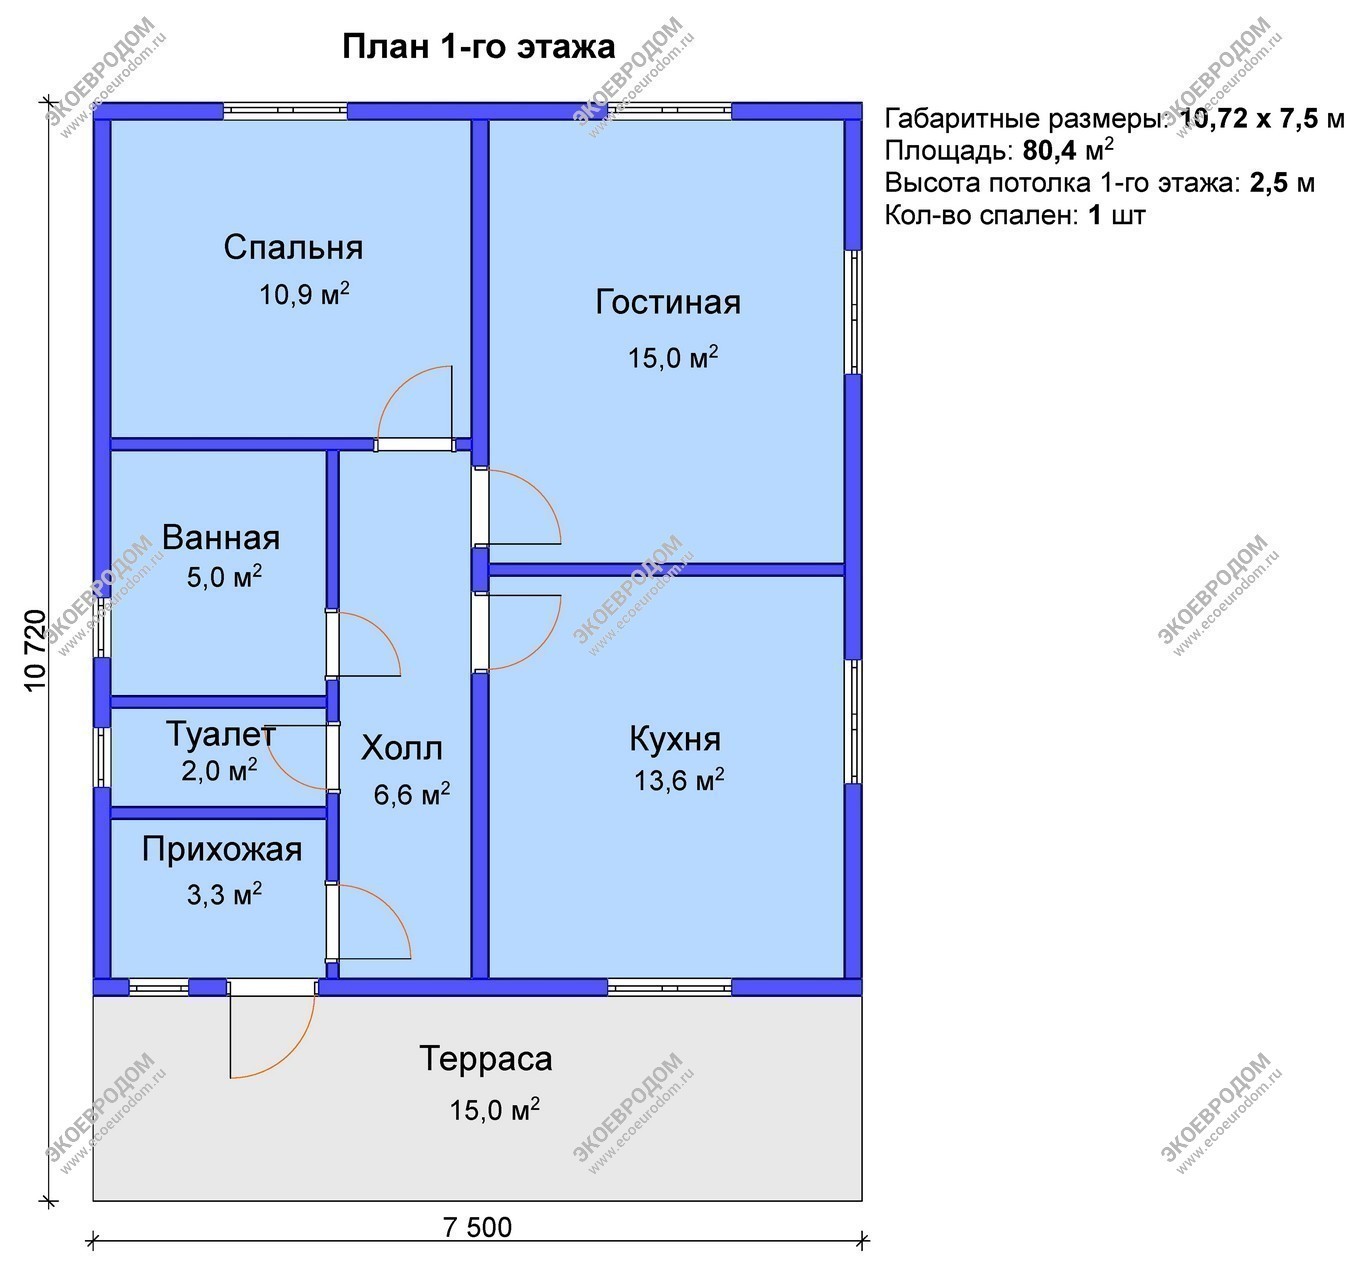 Проект дома из СИП на 80,4 м2, размером 10,72 х 7,5 м, одноэтажный, терраса, цена от ЭкоЕвроДом